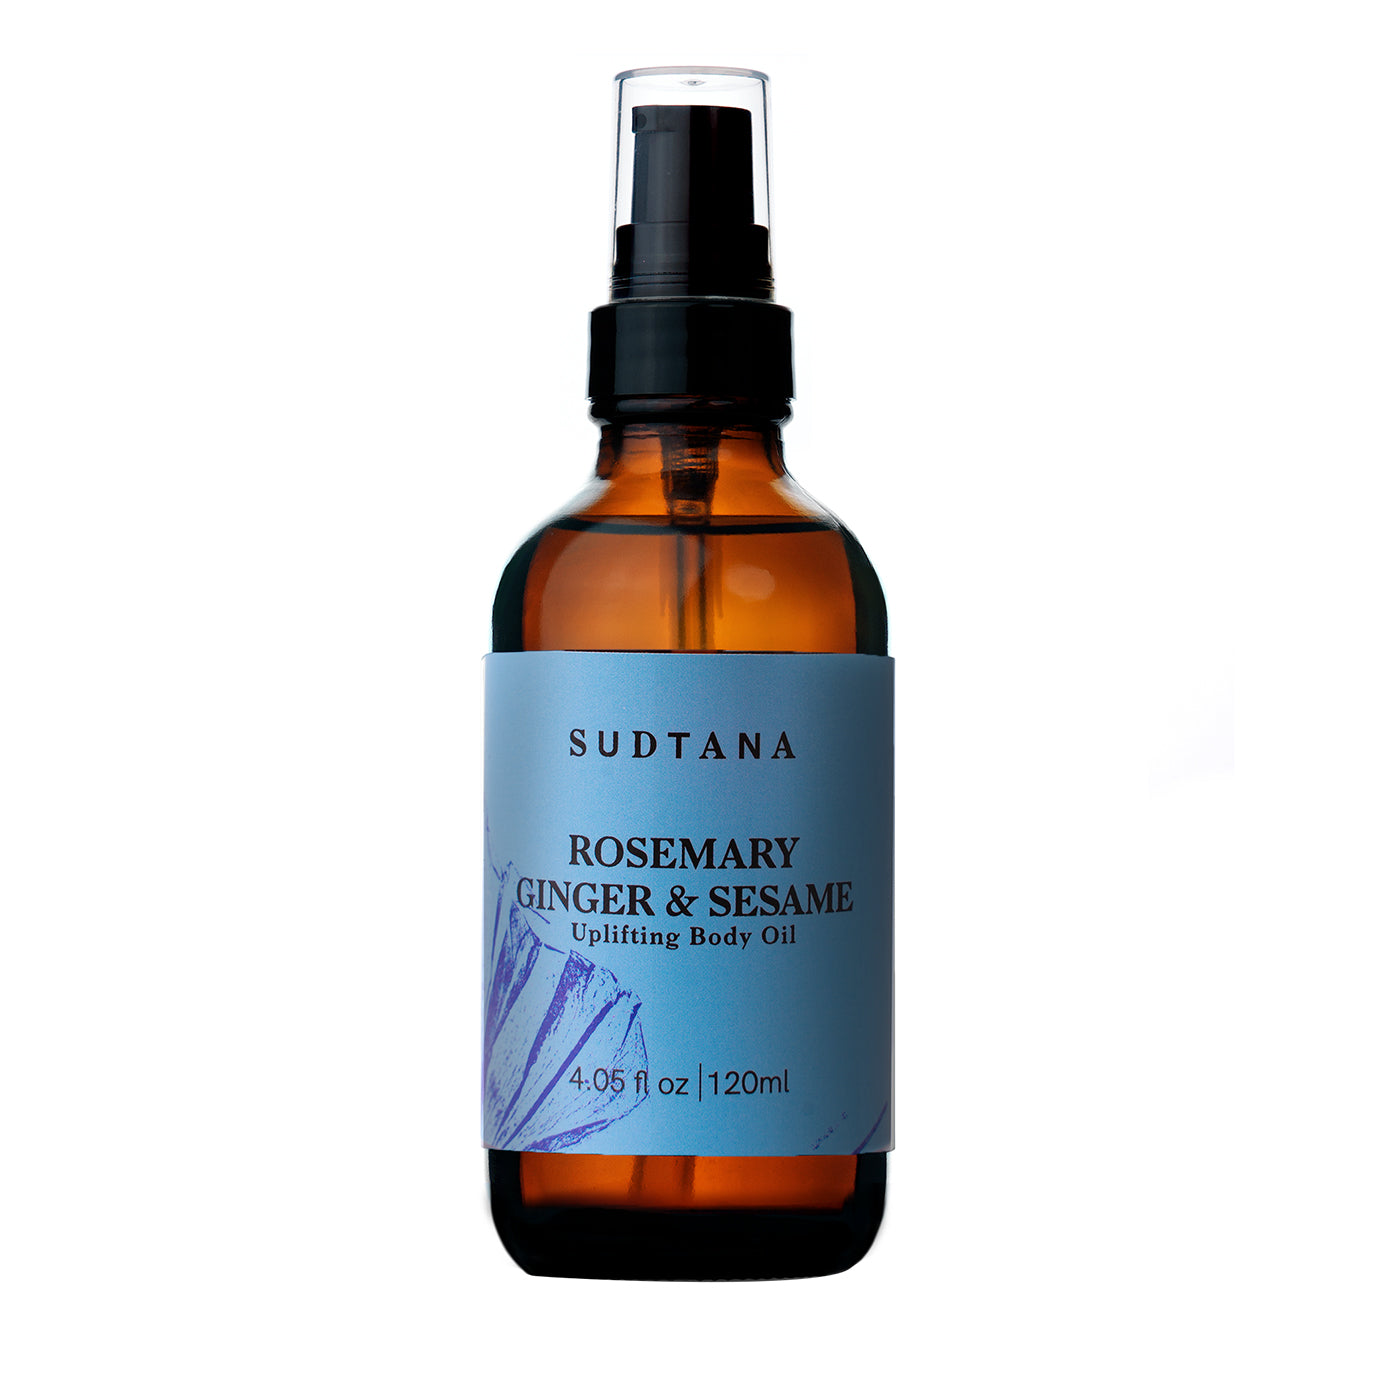 Sudtana Rosemary Ginger & Sesame Uplifting Body Oil